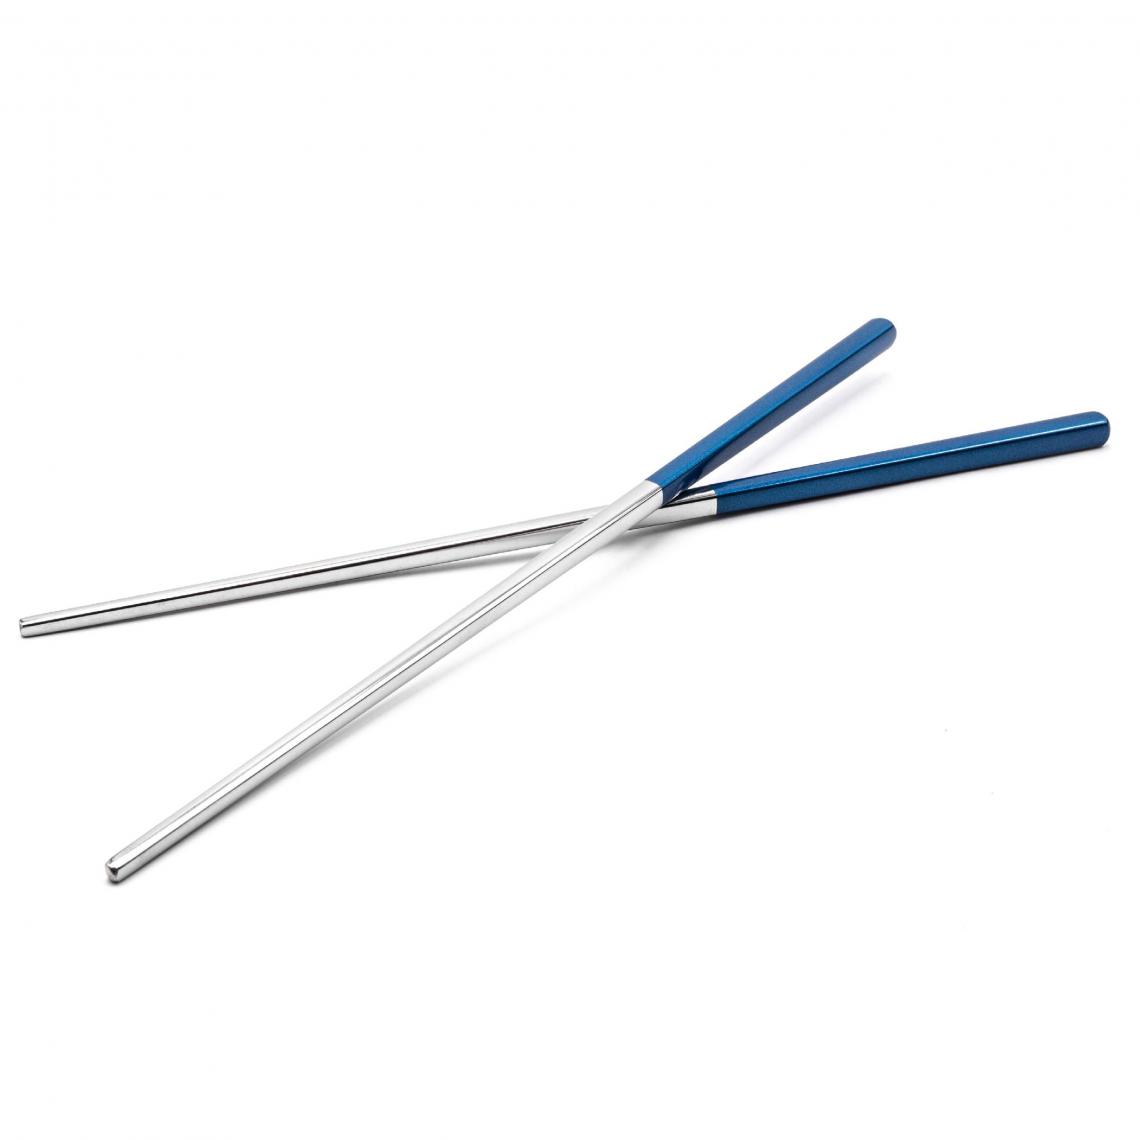 Vhbw - vhbw 1x paire de baguettes chopsticks en acier inoxydable - bleu / argent - Accessoires barbecue